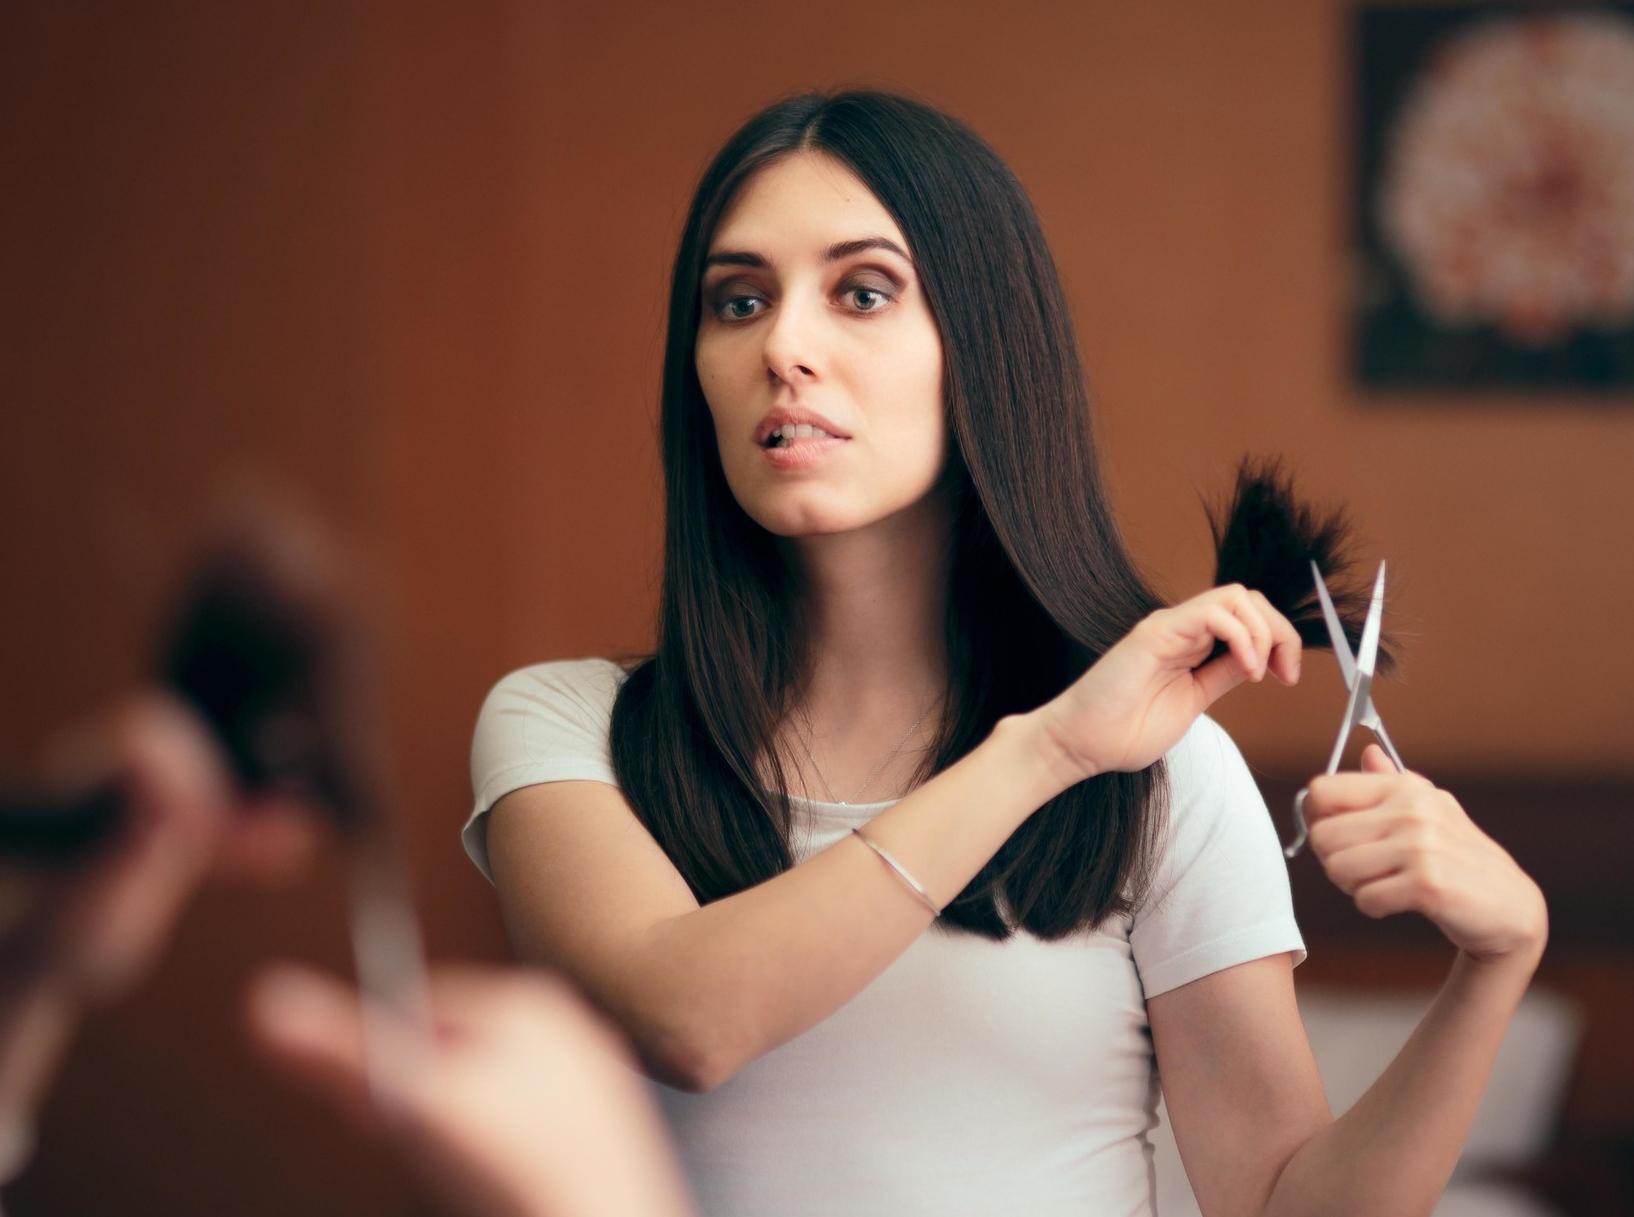 Не рискуйте: почему нельзя стричь волосы самой себе — 5 опасных последствий  | MARIECLAIRE